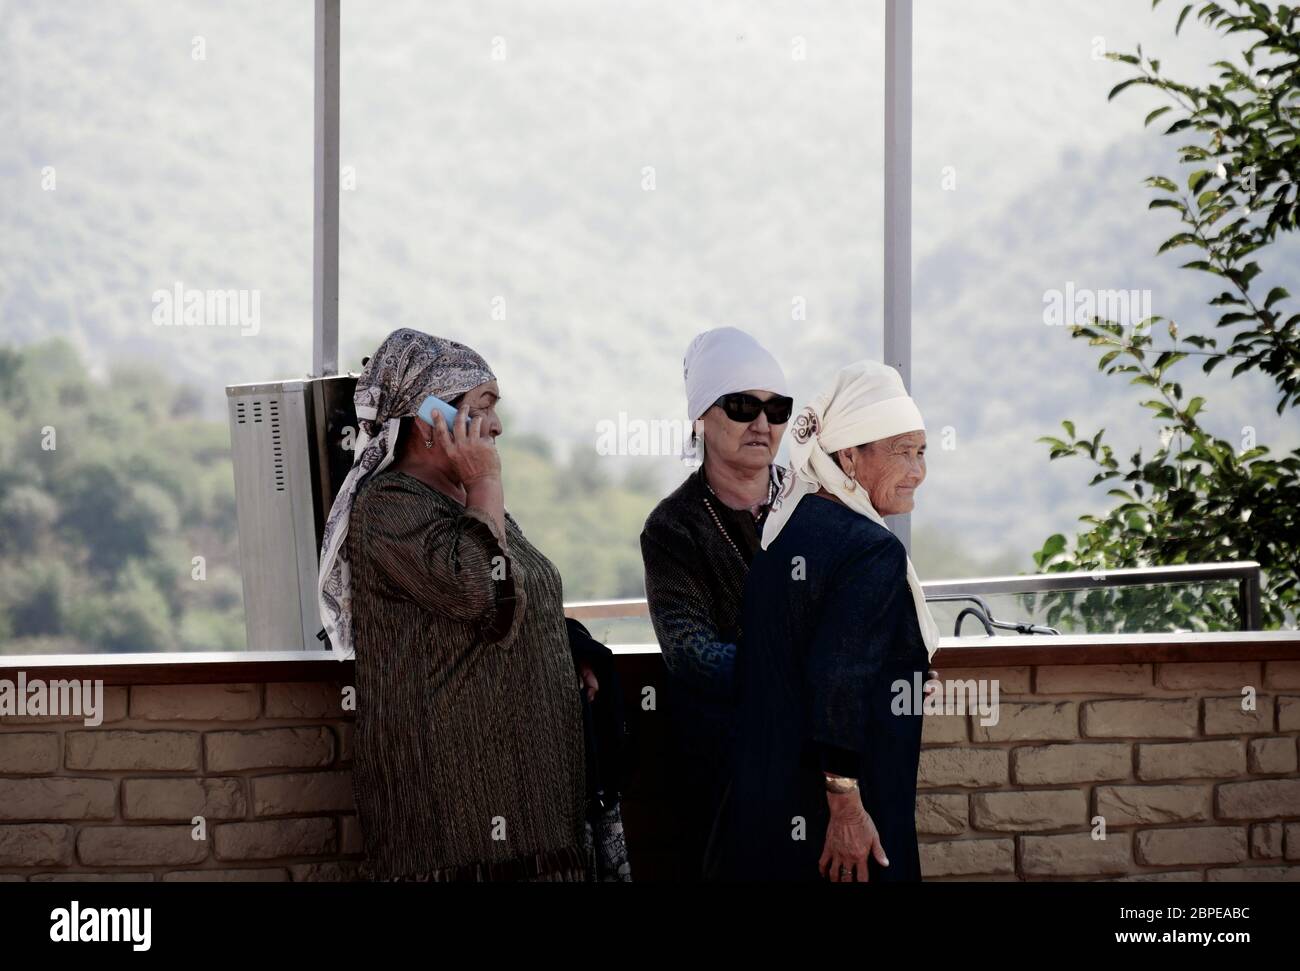 Almaty, Kazakhstan - 3 settembre 2019: Tre donne anziane riposano su un punto di vista in Almaty mentre una di loro sta usando il suo telefono cellulare. Foto Stock